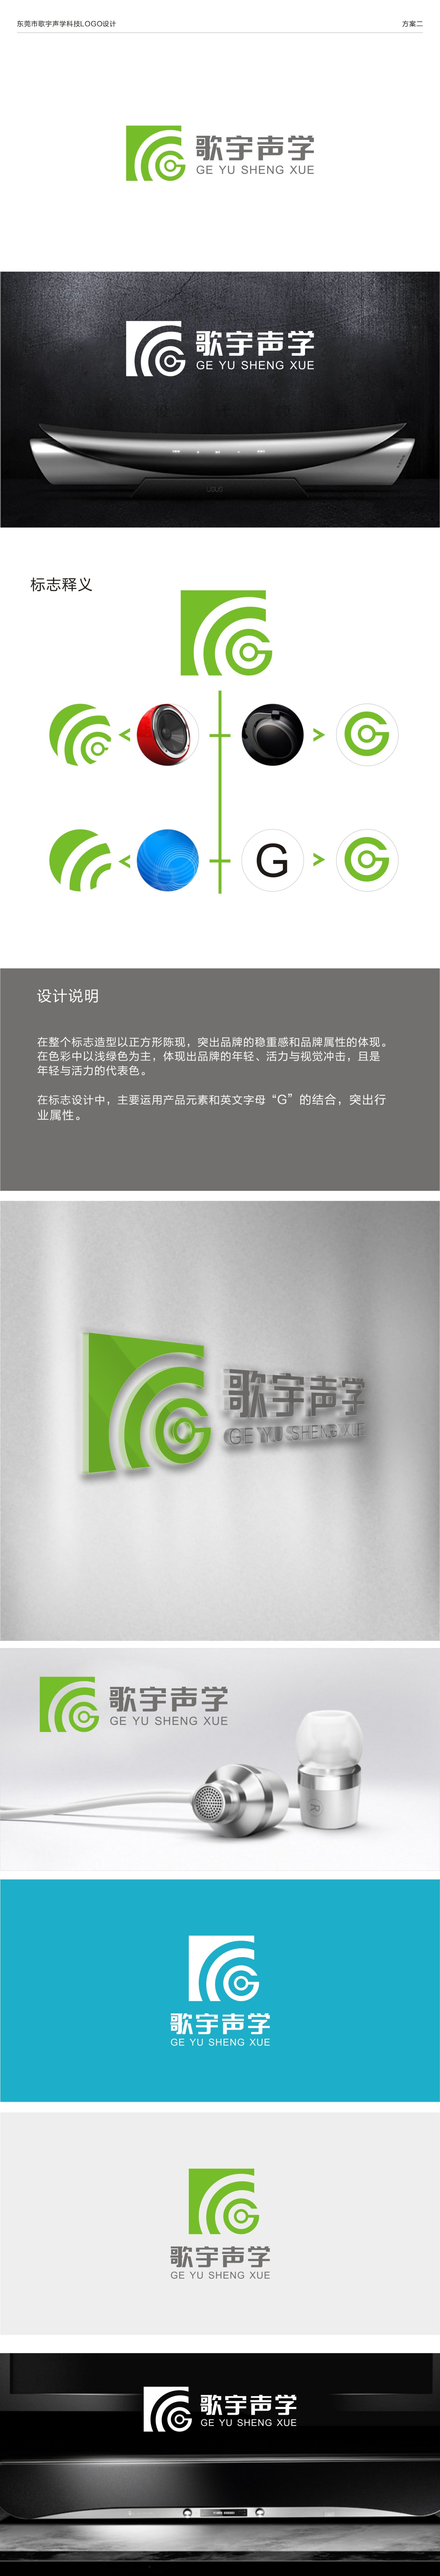 歌宇声学科技logo设计图0